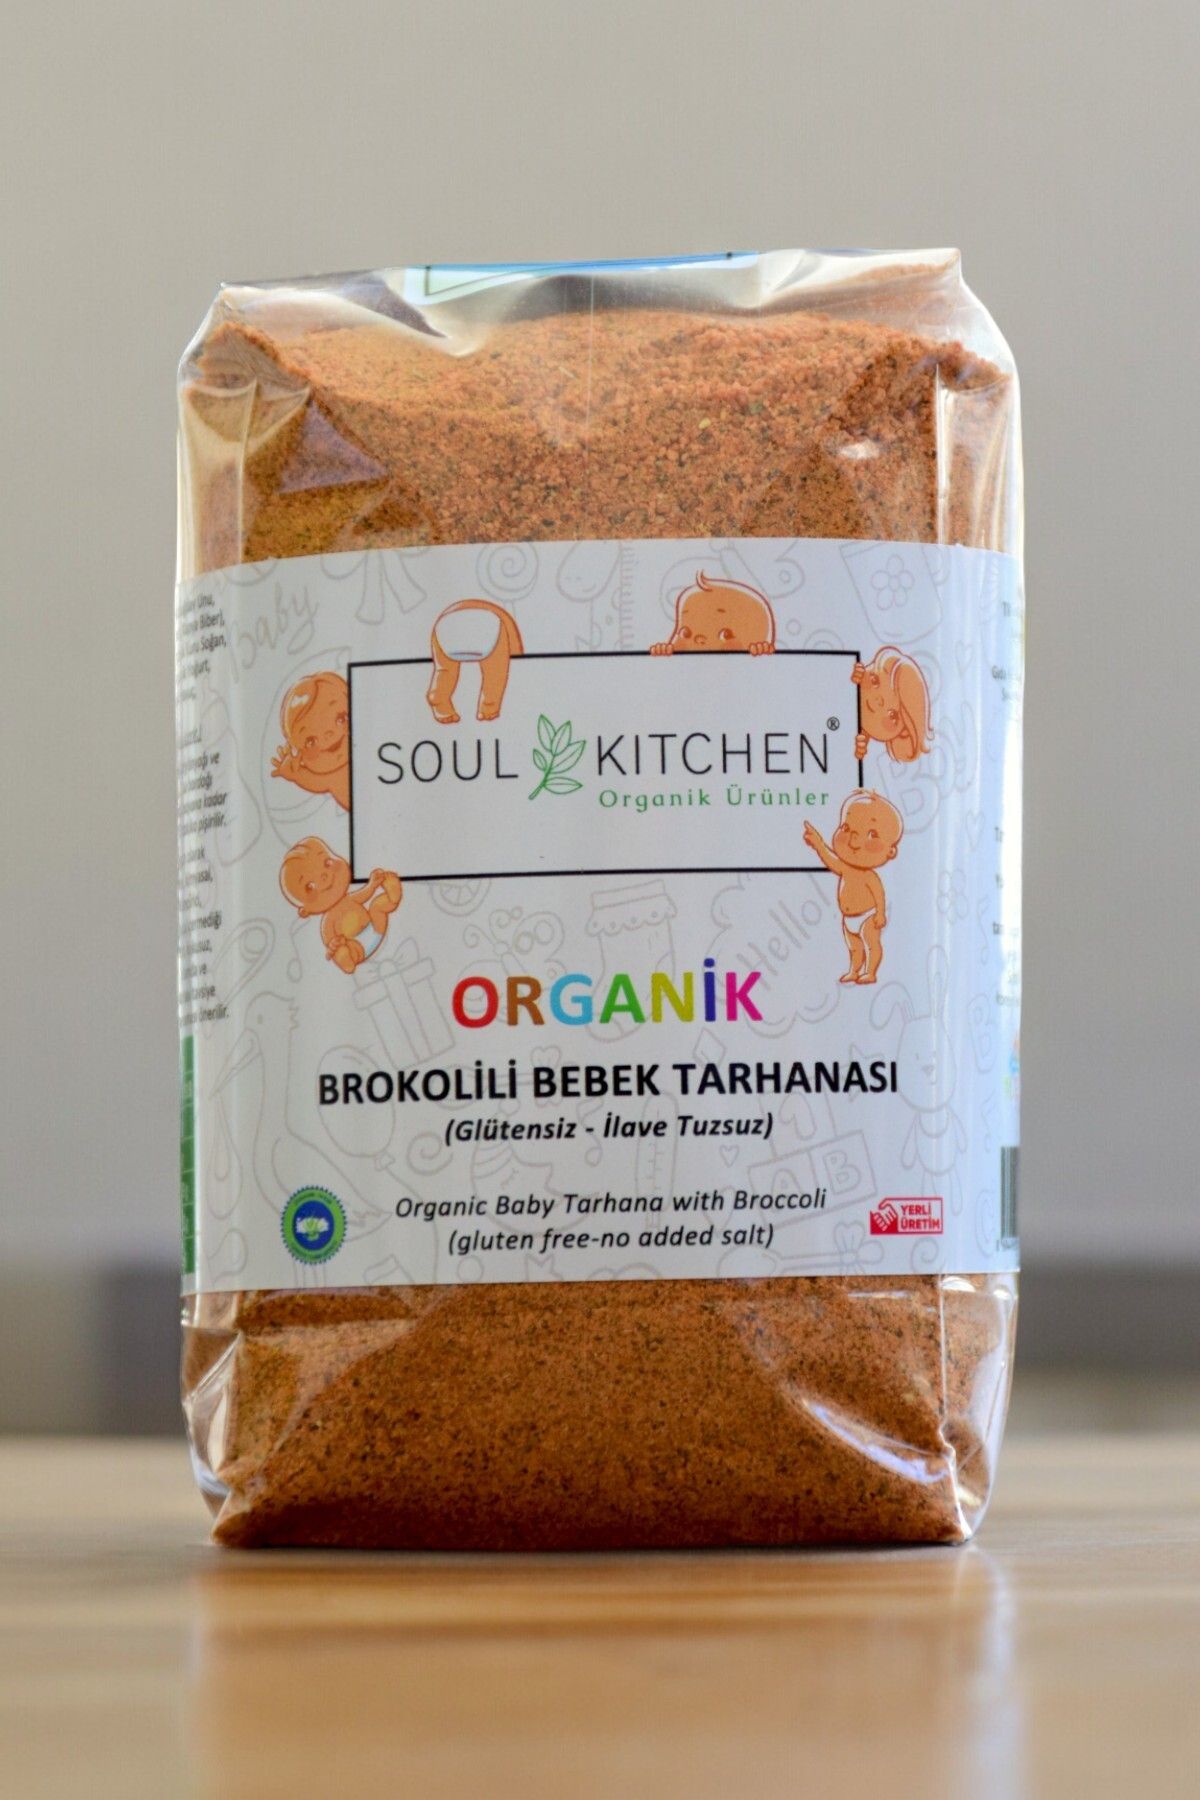 Soul Kitchen Organik Ürünler Organik Brokolili Bebek Tarhanası 250gr (Glütensiz) (İlave Tuzsuz)